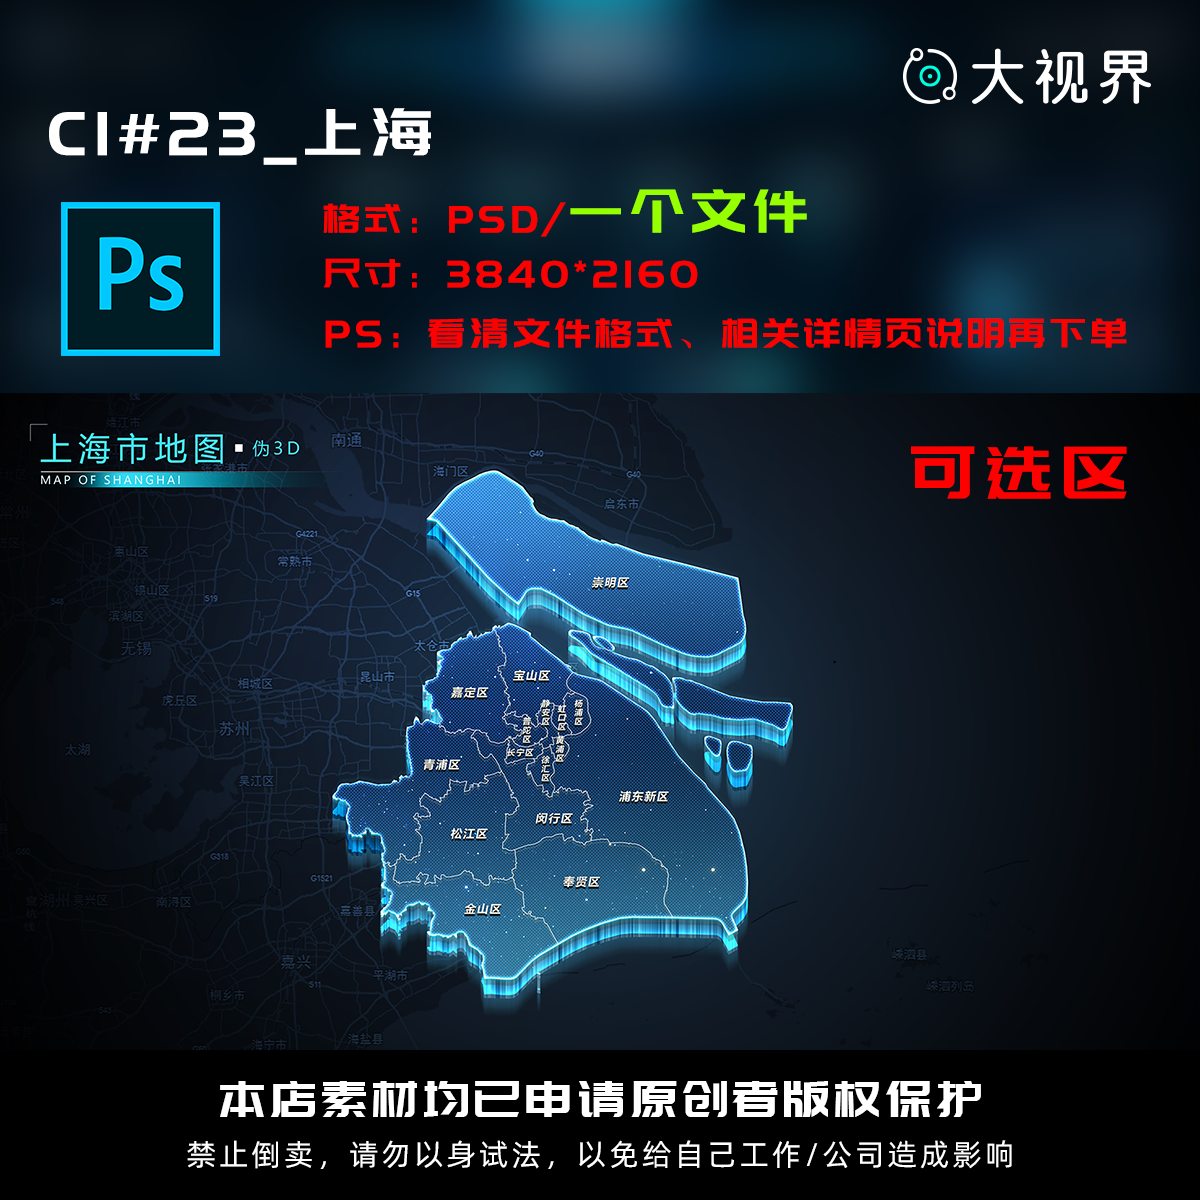 C1#23_科技感数据可视化立体上海数据地图psd源文件分层设计素材